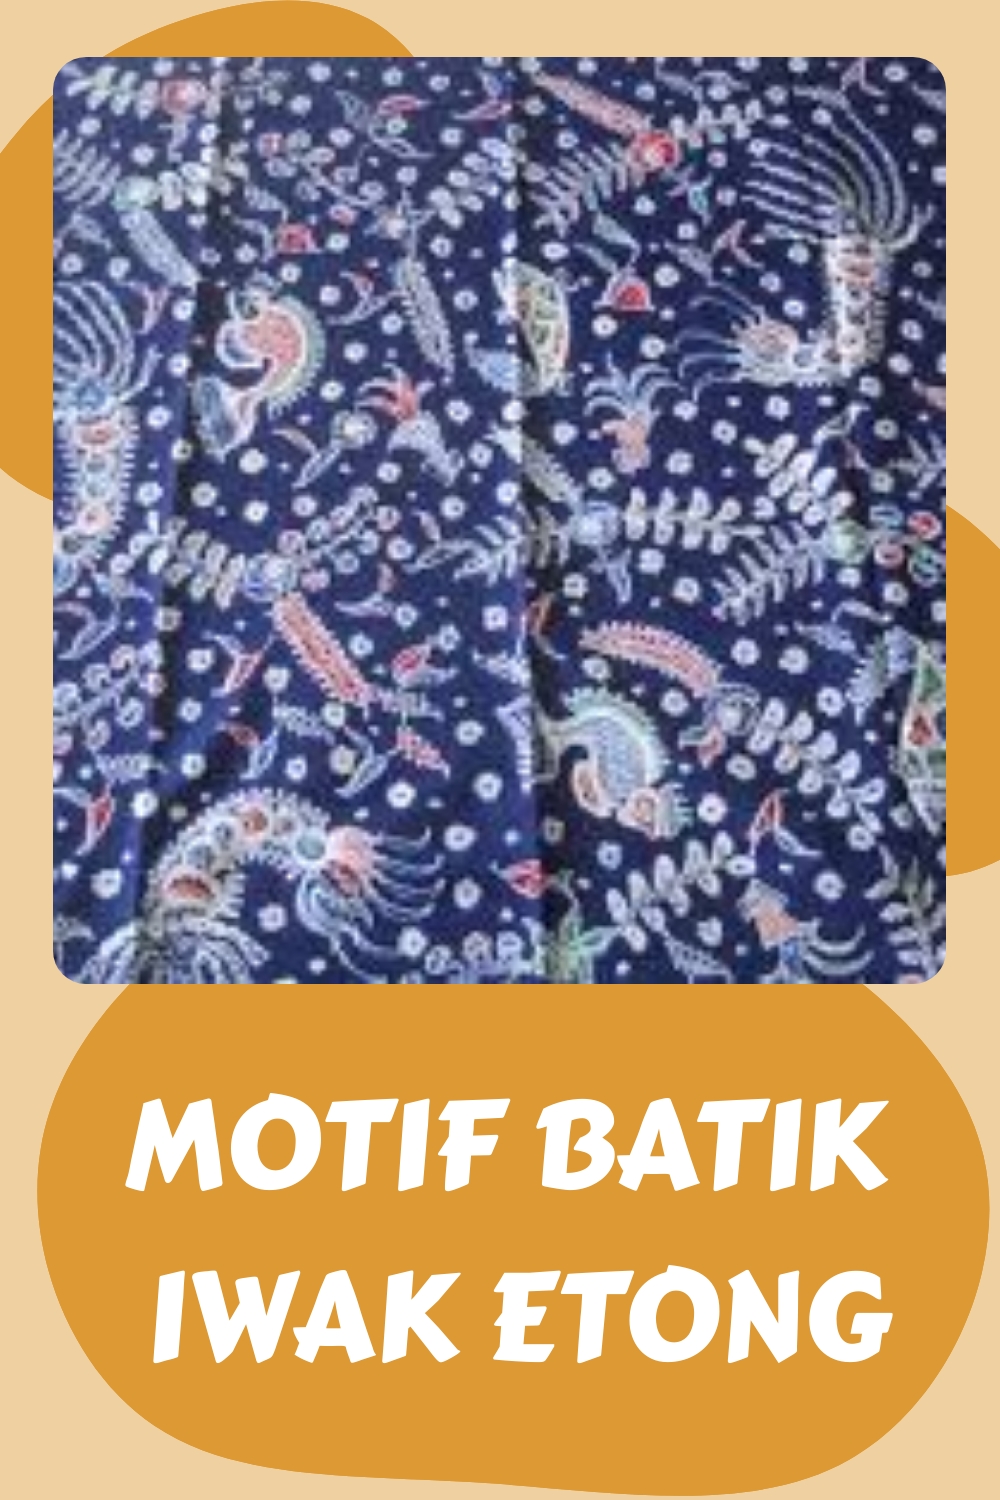 Motif Batik Iwak Etong generated pin 1887